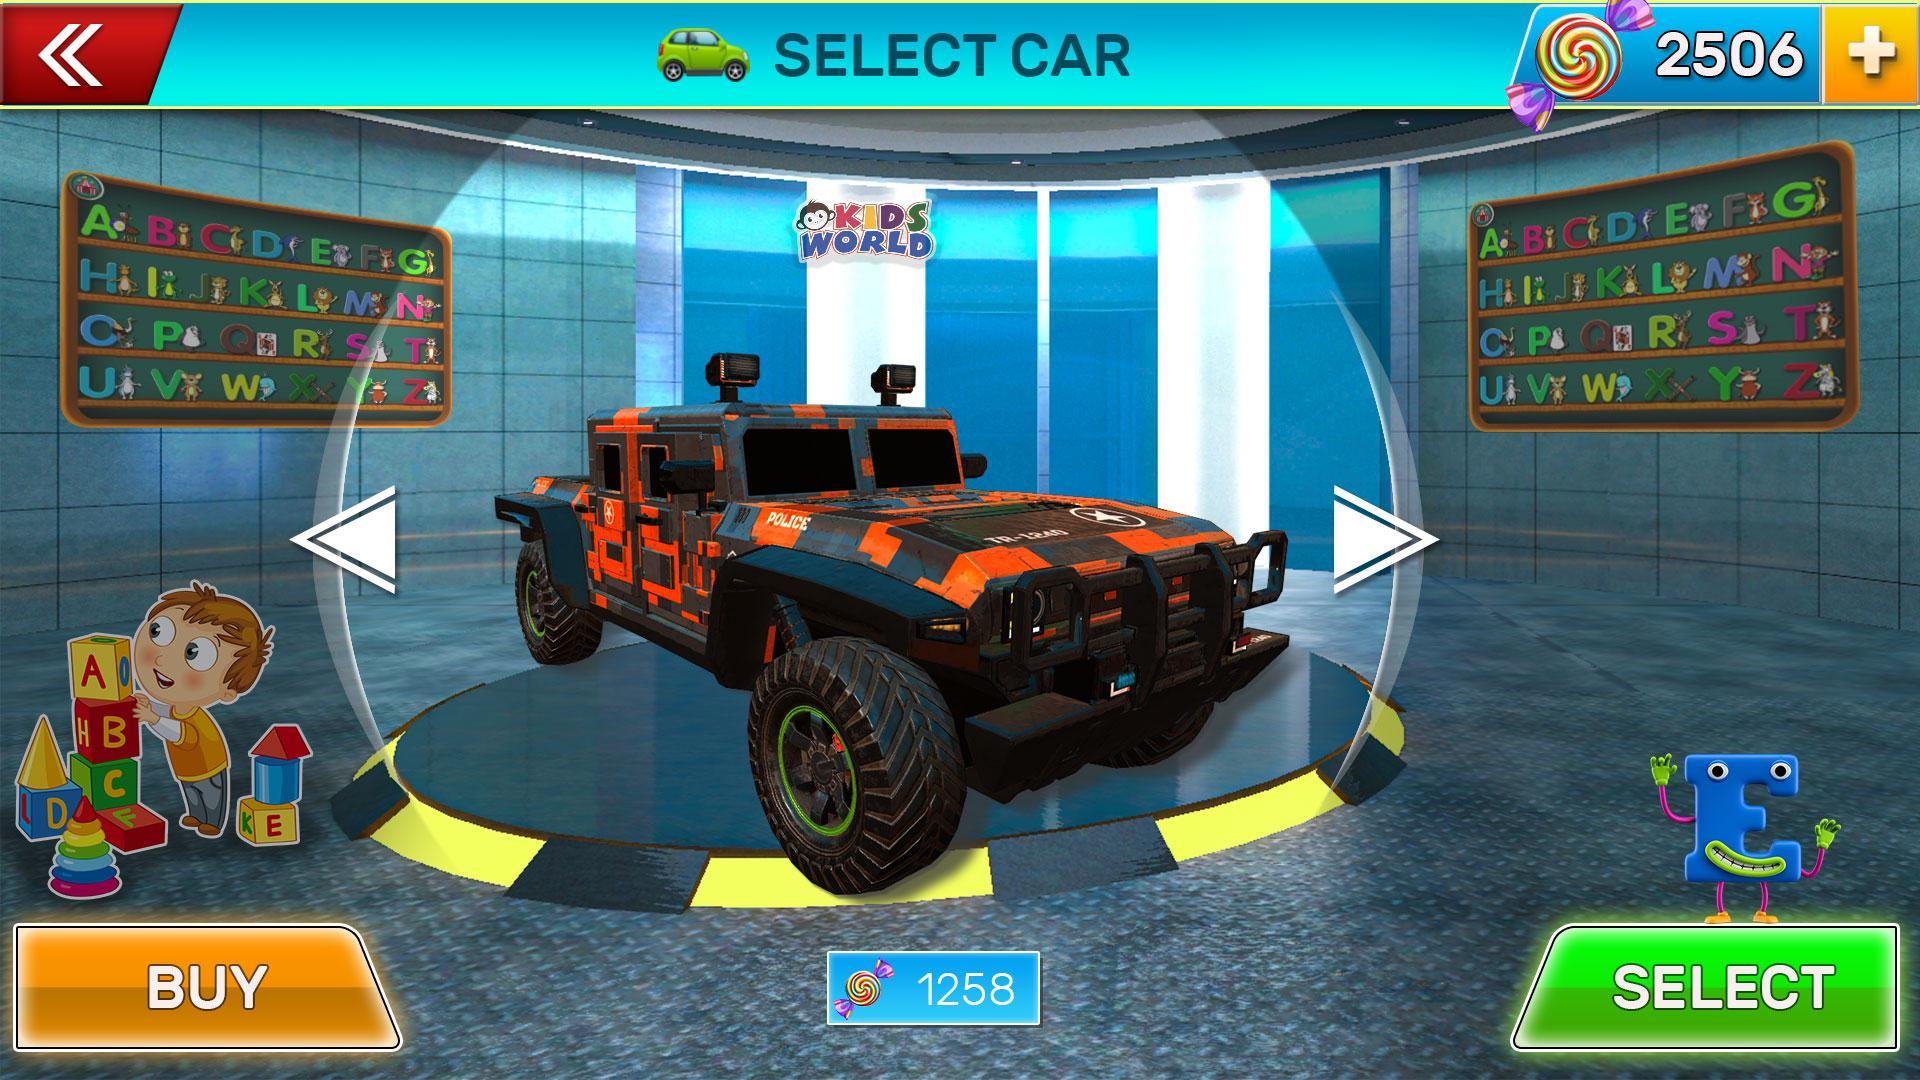 Monster Trucks Game 4 Kids - Learn by Car Crushingのキャプチャ